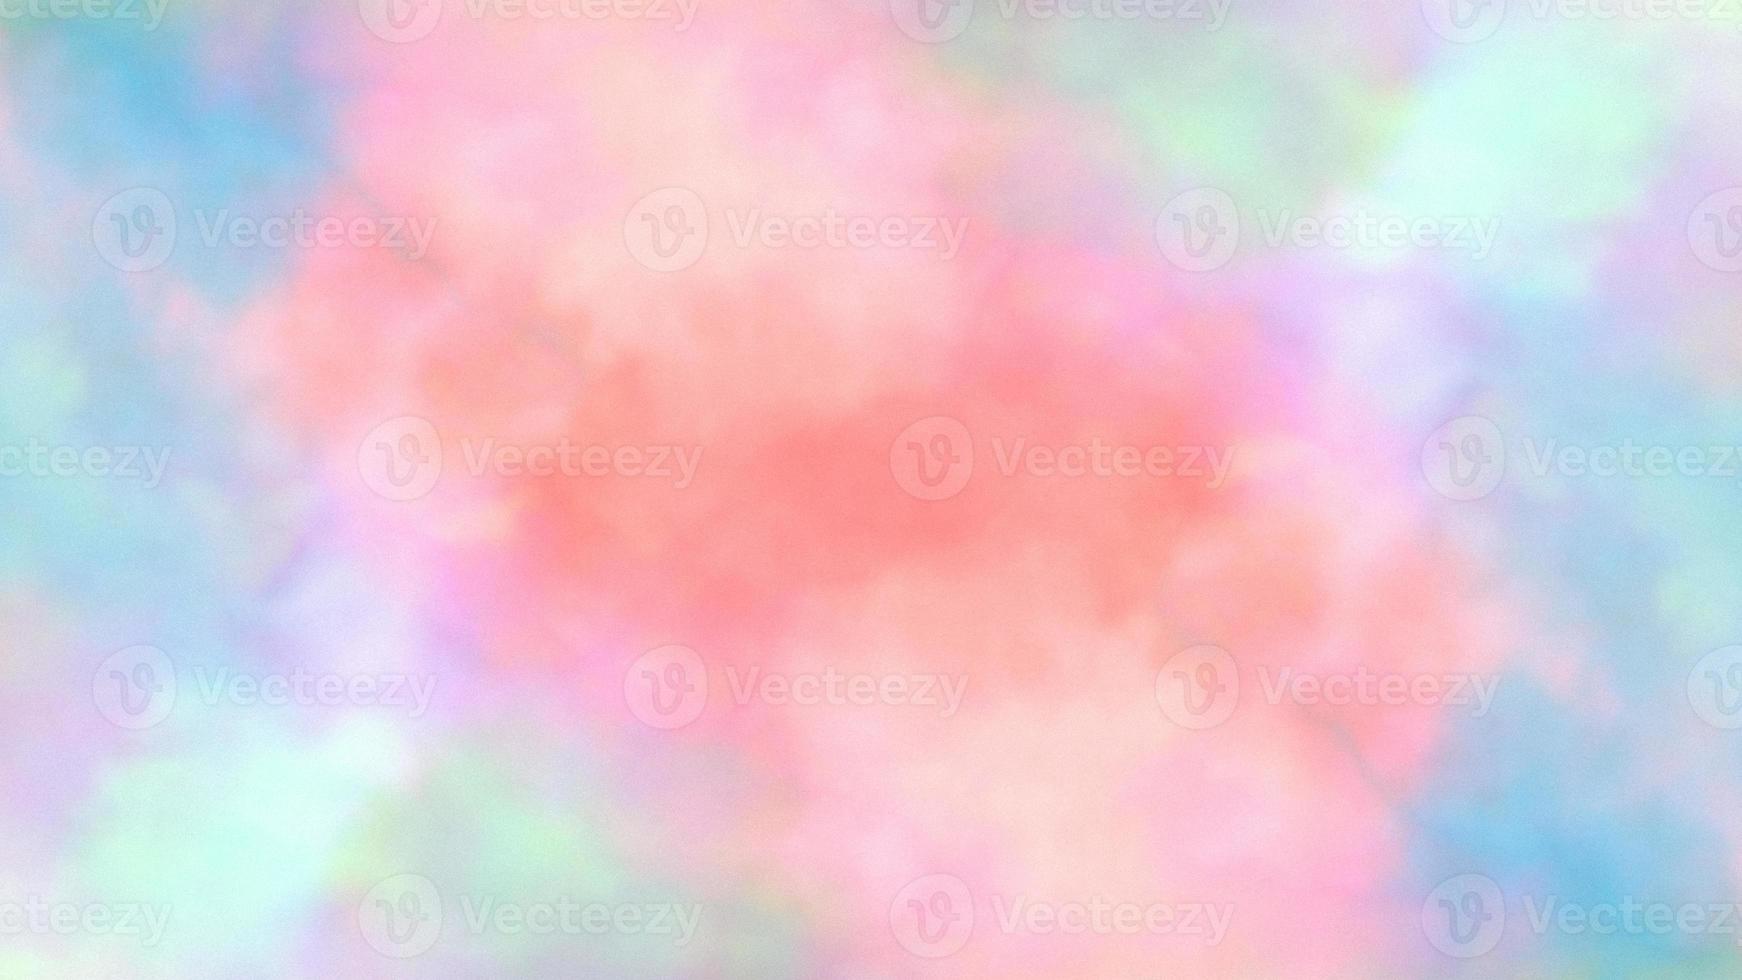 fantasie glad veelkleurig achtergrond. kleurrijk waterverf illustratie schilderij achtergrond. wolk en lucht met een pastel gekleurde achtergrond foto